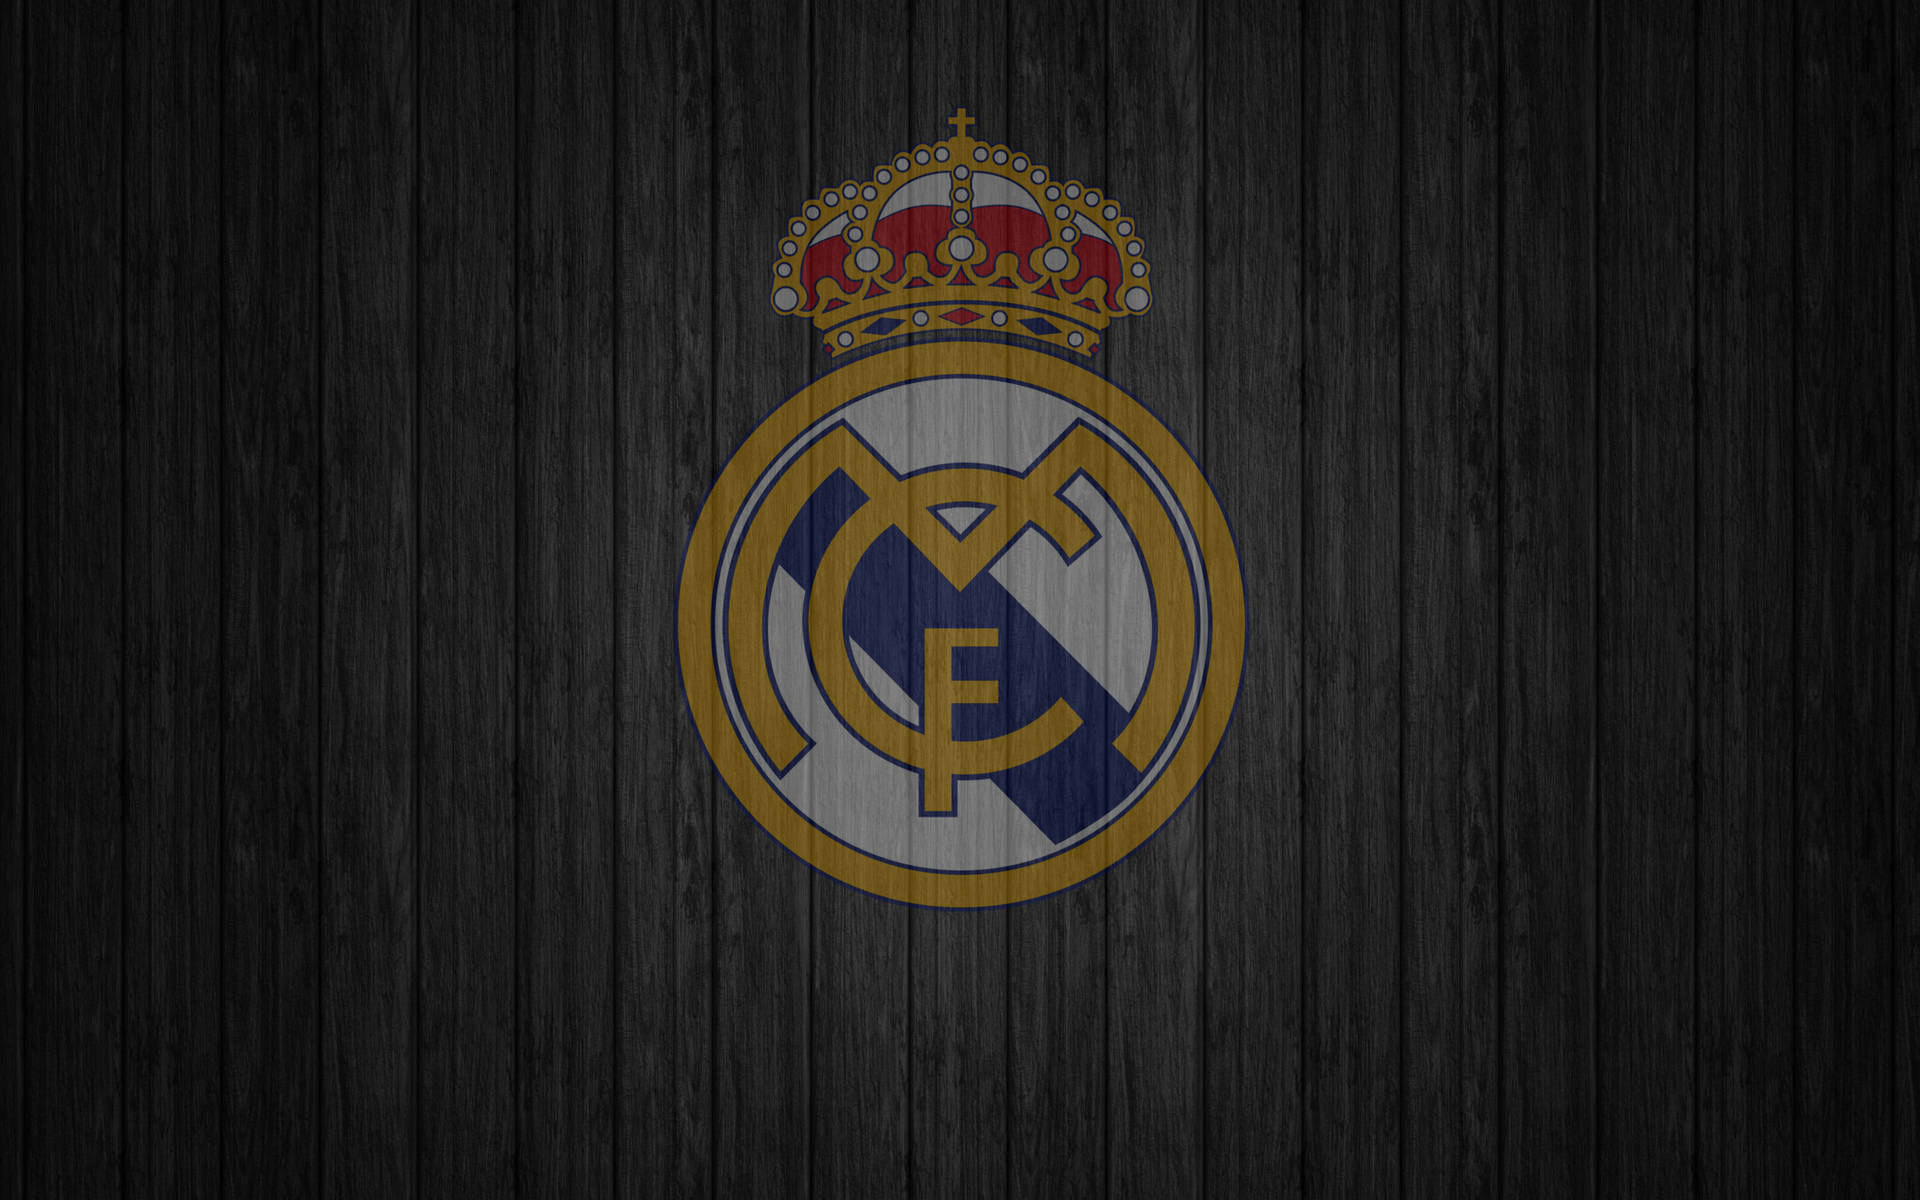 Papelde Parede De Madeira Com O Escudo Do Real Madrid Em 4k. Papel de Parede